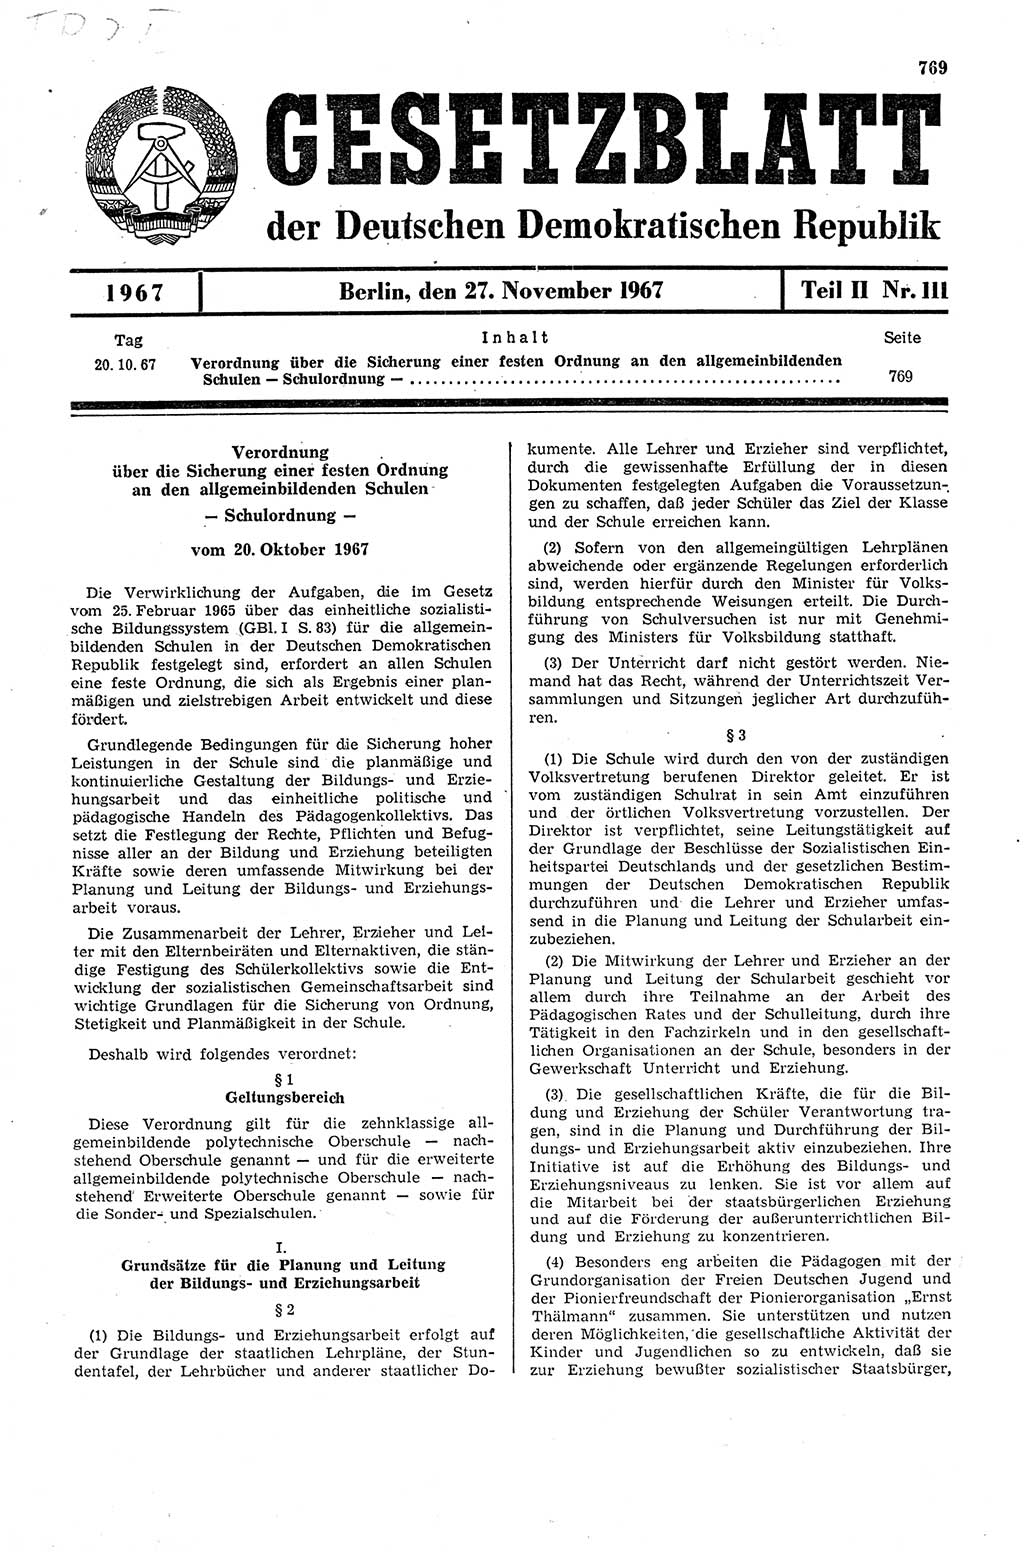 Gesetzblatt (GBl.) der Deutschen Demokratischen Republik (DDR) Teil ⅠⅠ 1967, Seite 769 (GBl. DDR ⅠⅠ 1967, S. 769)